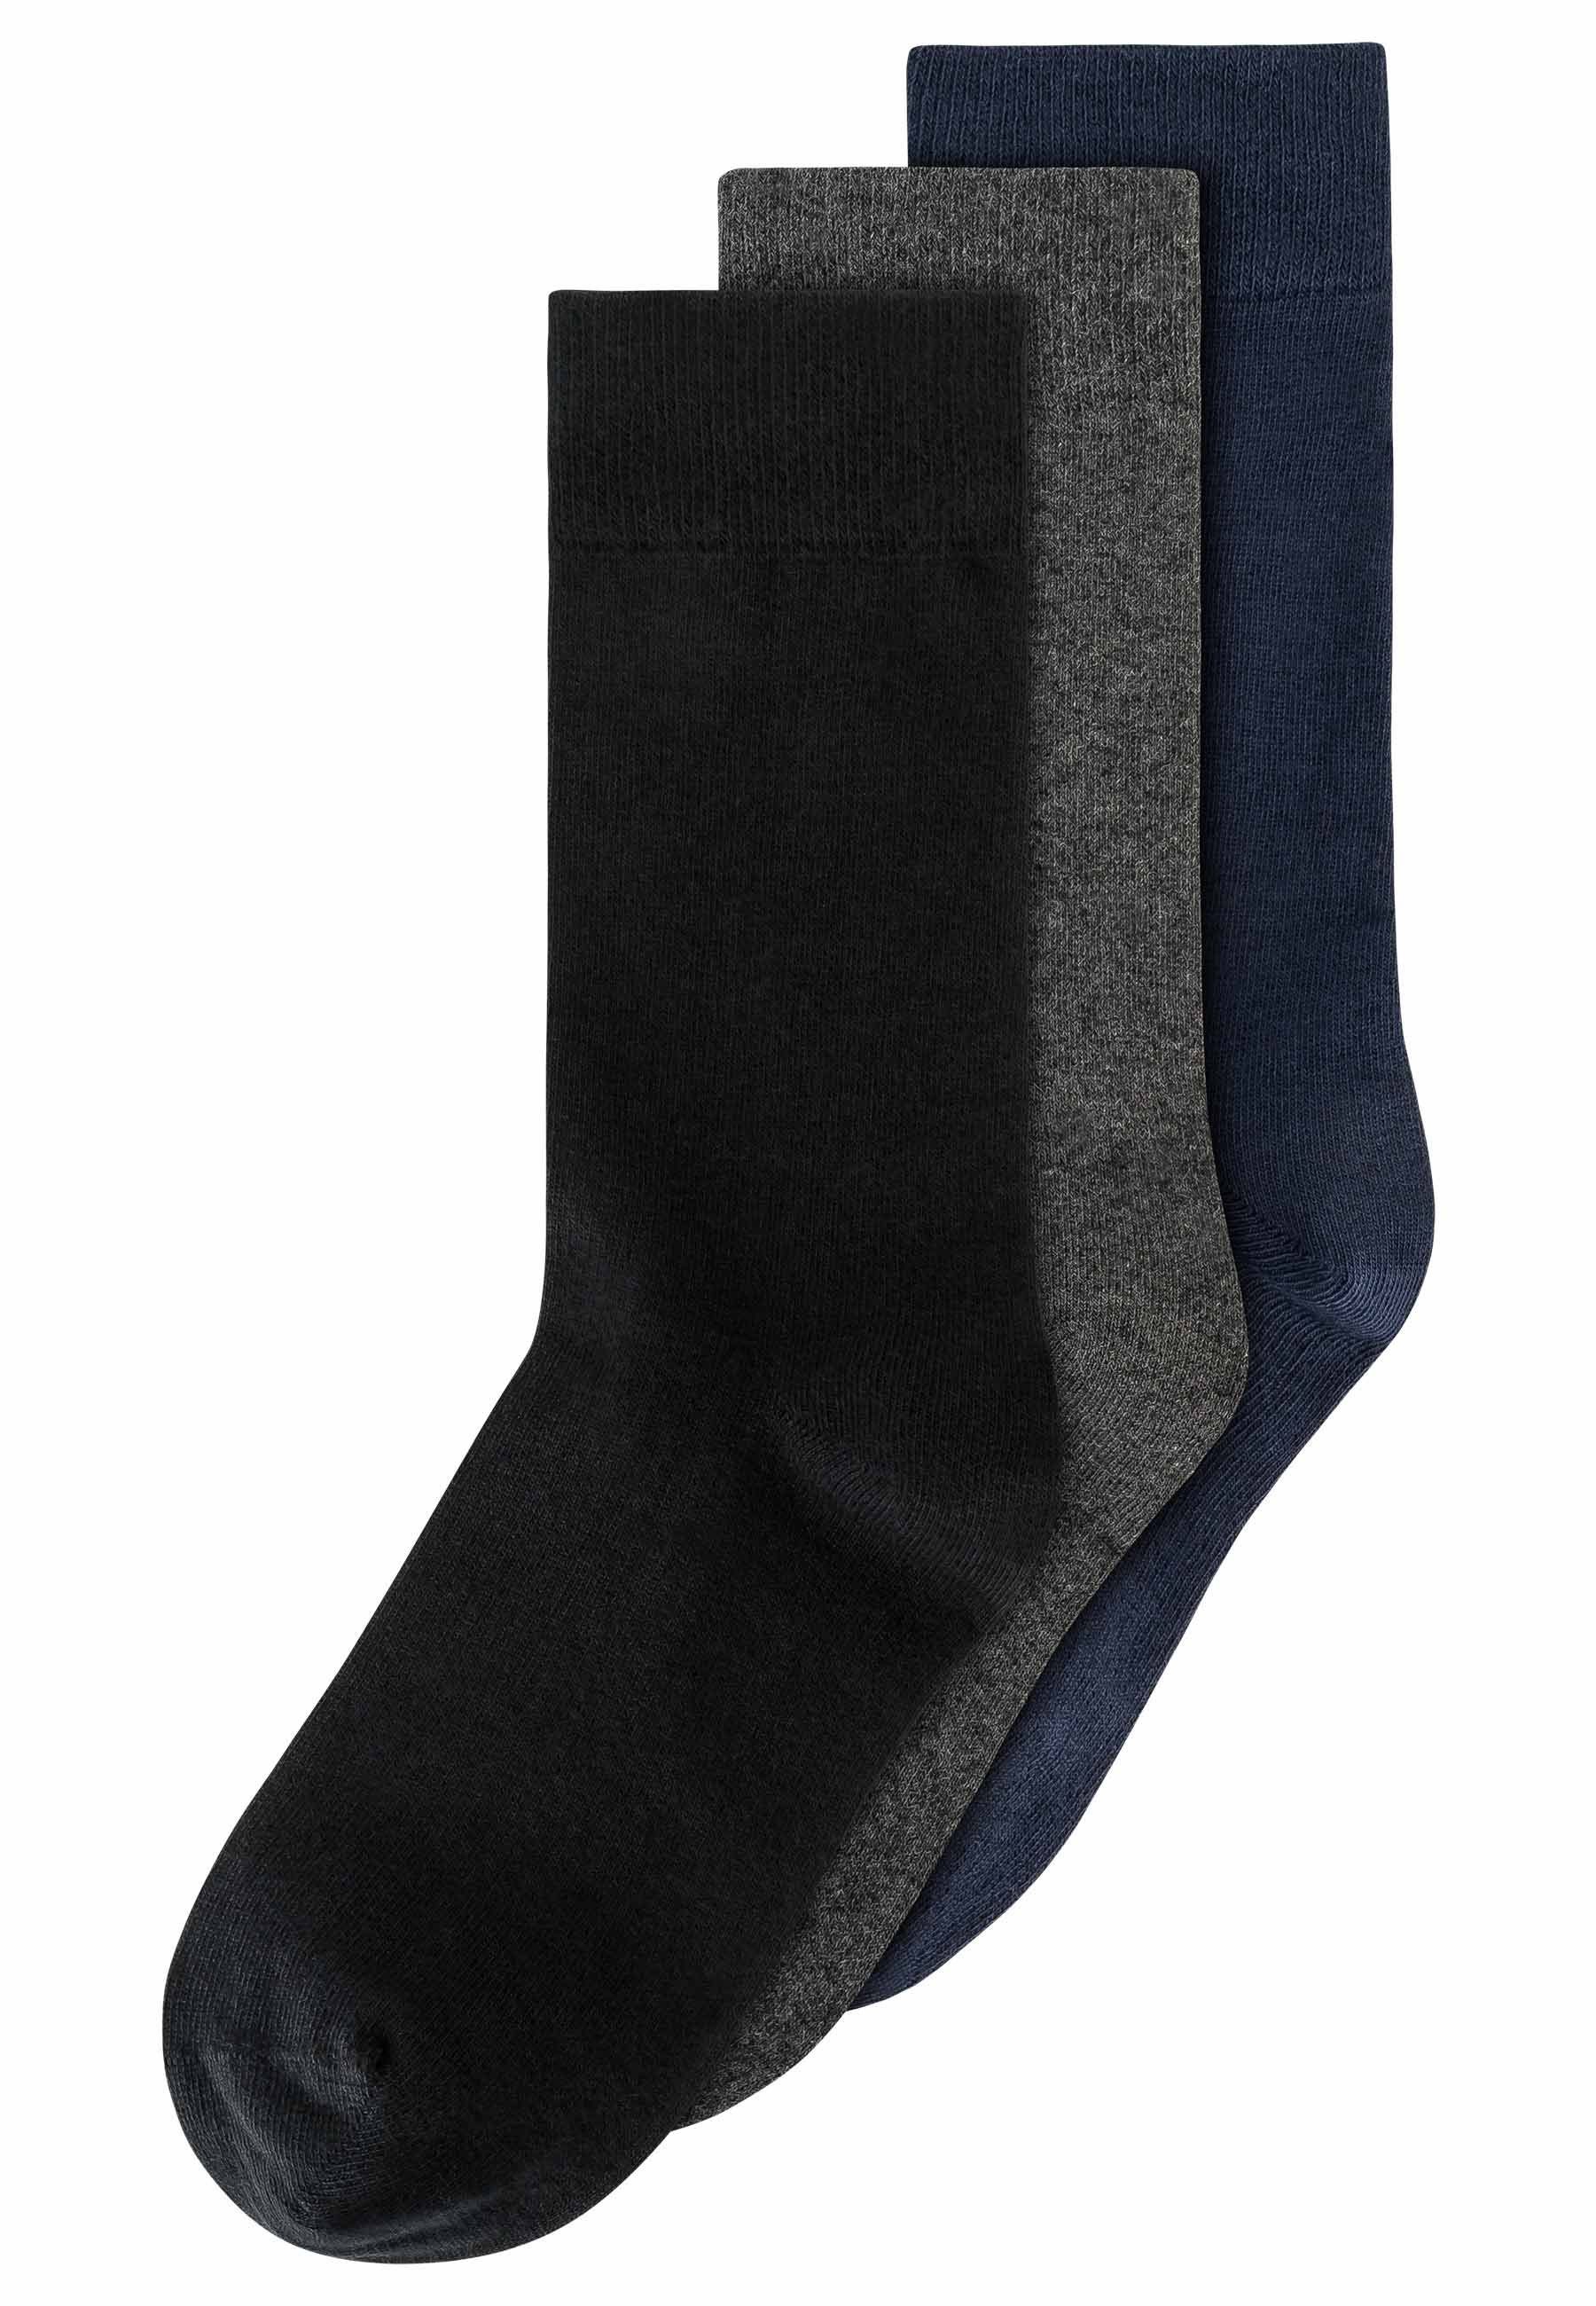 Basic / 3er Socken melange MELA anthrazit / Pack schwarz navy Socken